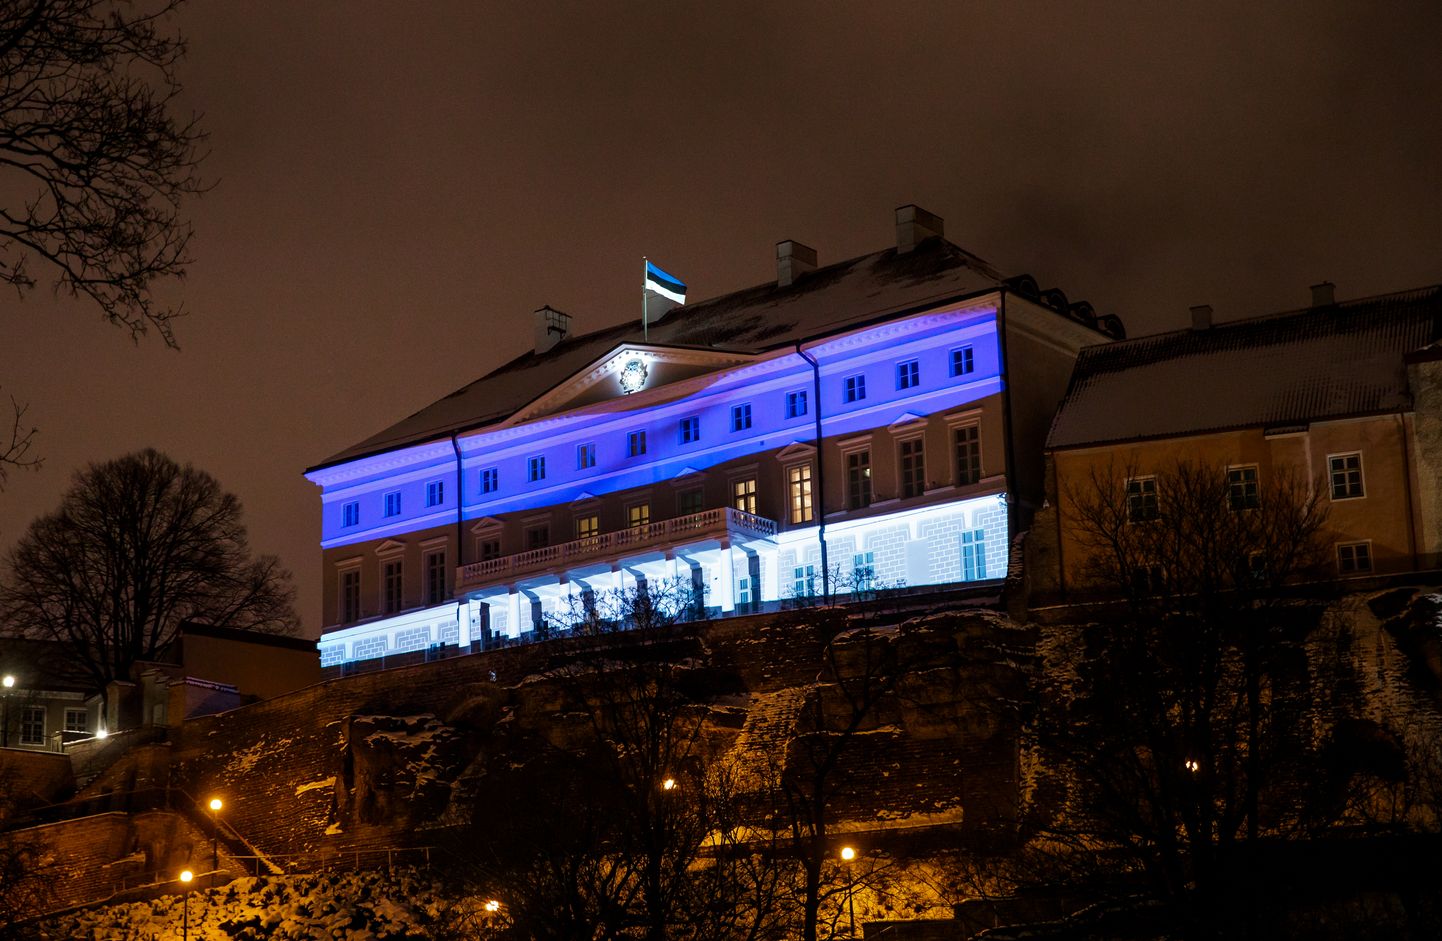 Дом Стенбока в цветах эстонского флага.